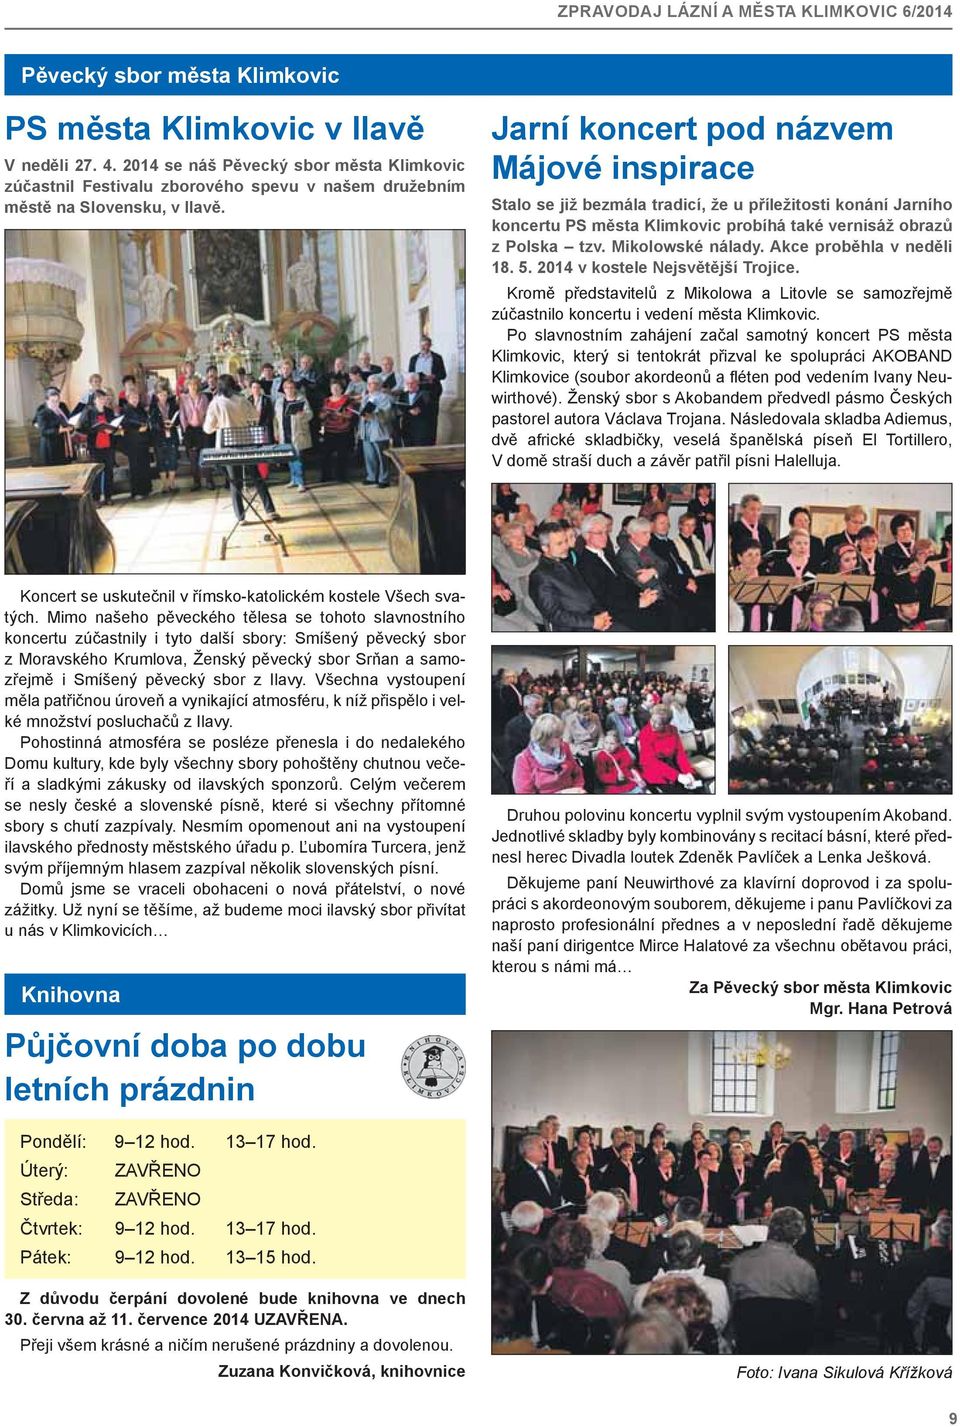 Akce proběhla v neděli 18. 5. 2014 v kostele Nejsvětější Trojice. Kromě představitelů z Mikolowa a Litovle se samozřejmě zúčastnilo koncertu i vedení města Klimkovic.